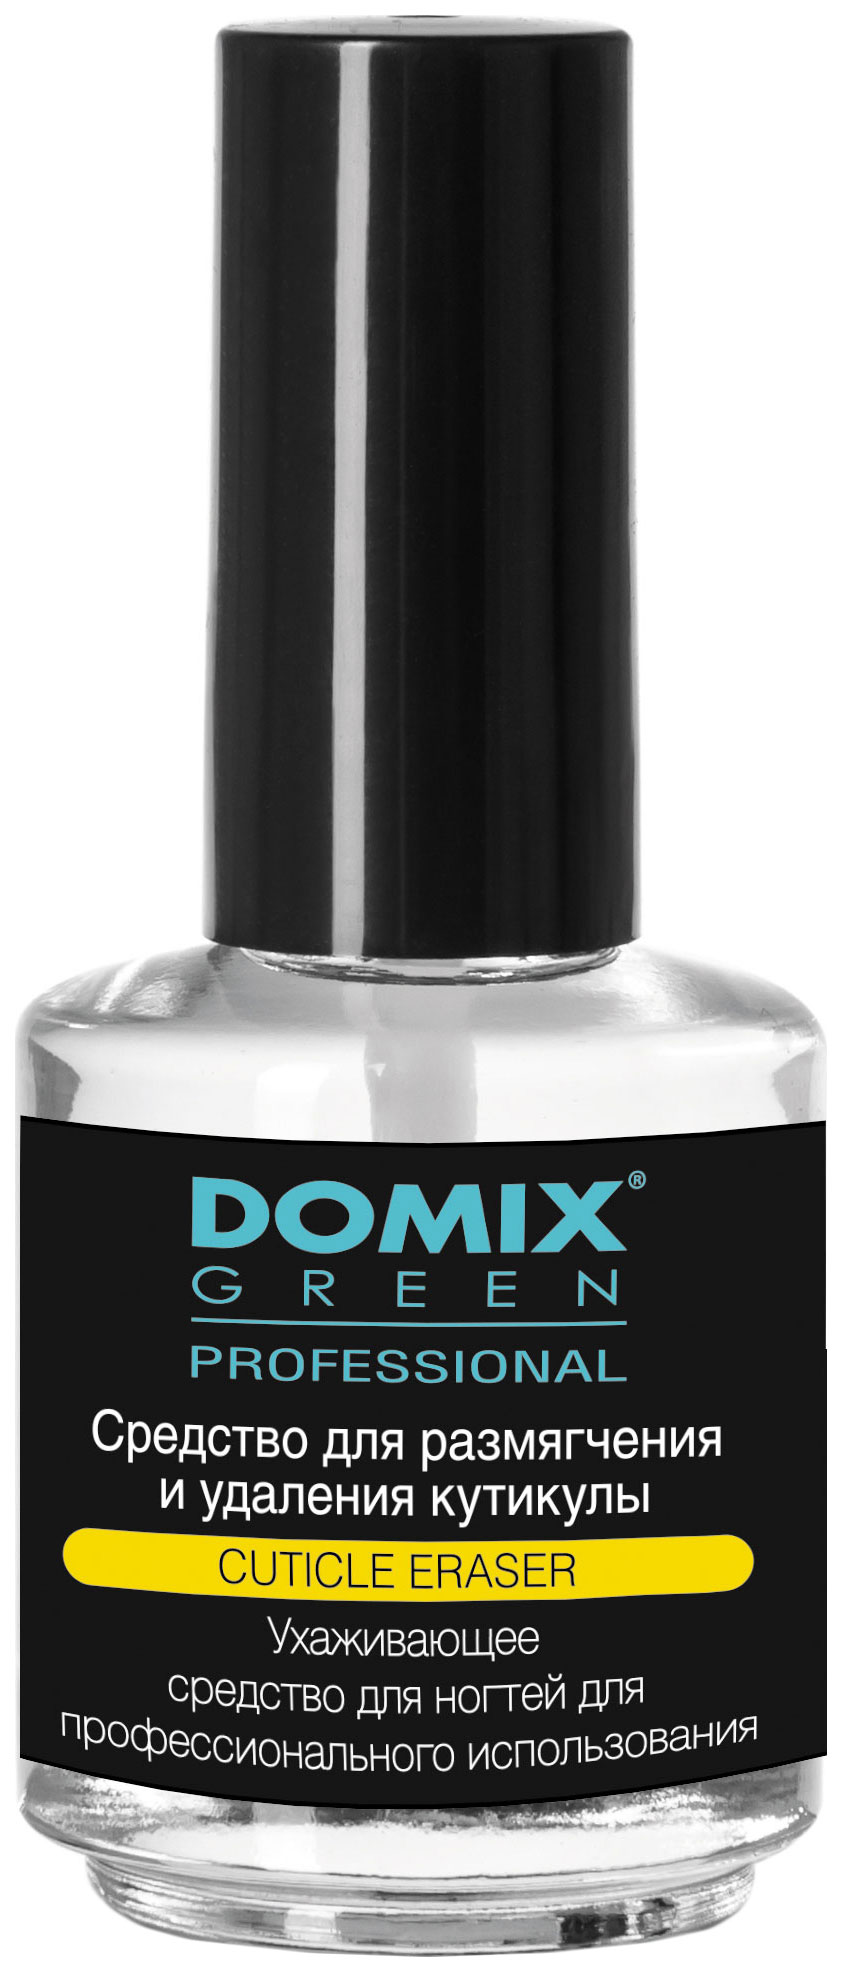 Средство для удаления кутикулы Domix Green Professional Cuticle Eraser 17 мл domix средство для удаления кутикулы cuticle remover dgp 200 мл